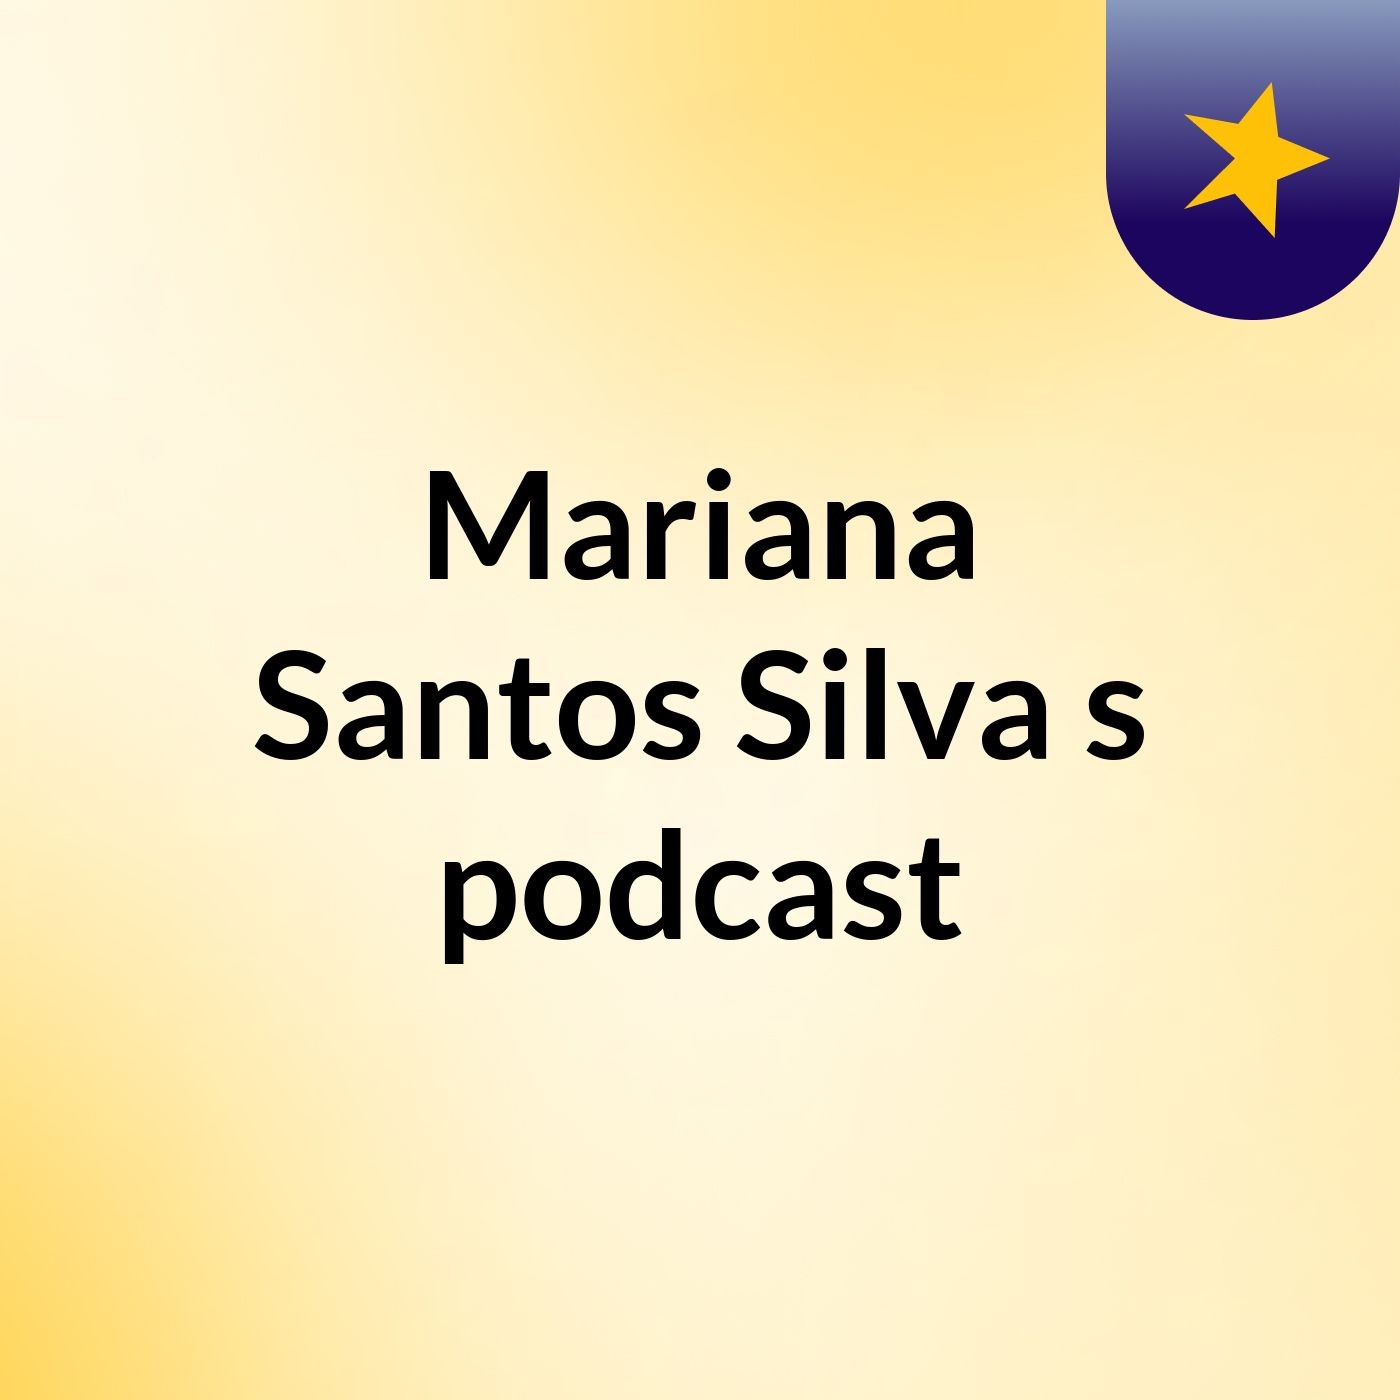 Episódio 4 - Mariana Santos Silva's podcast